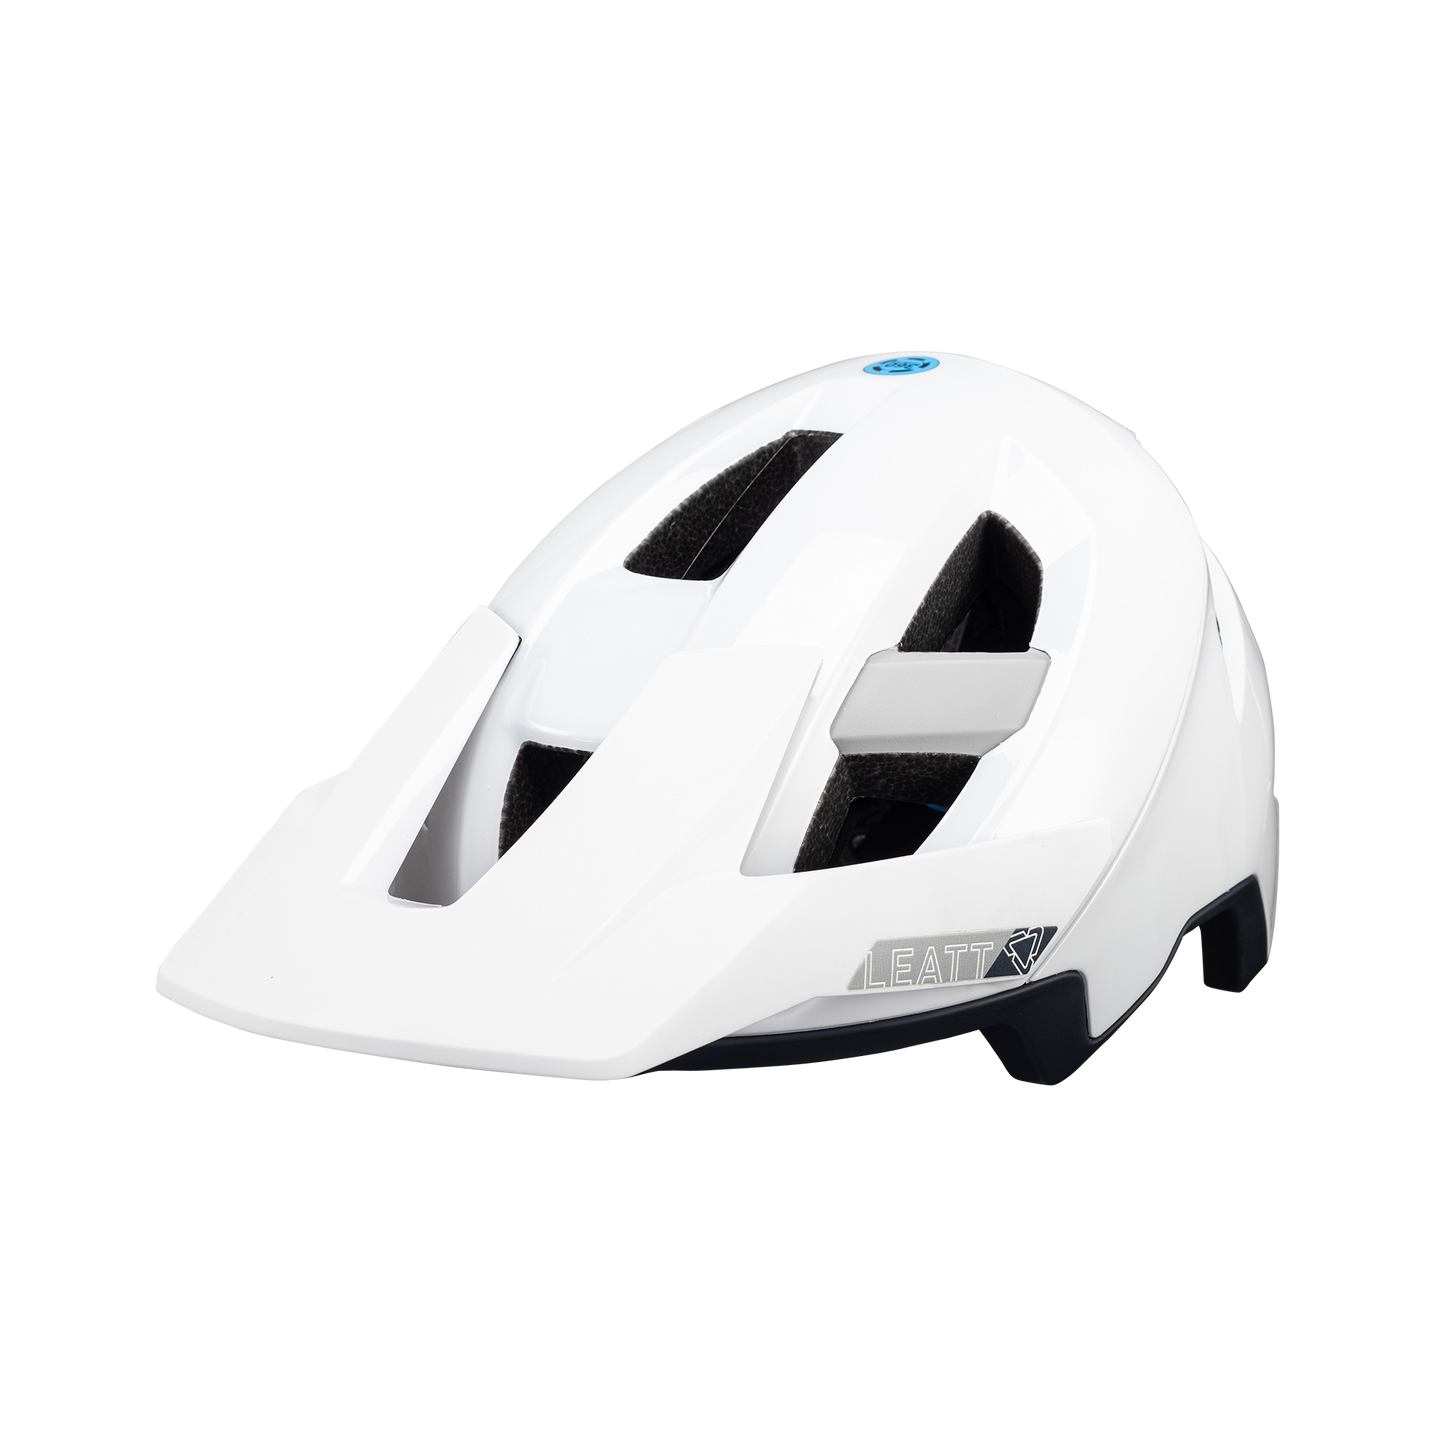 Helmet MTB AllMtn 3.0  - White